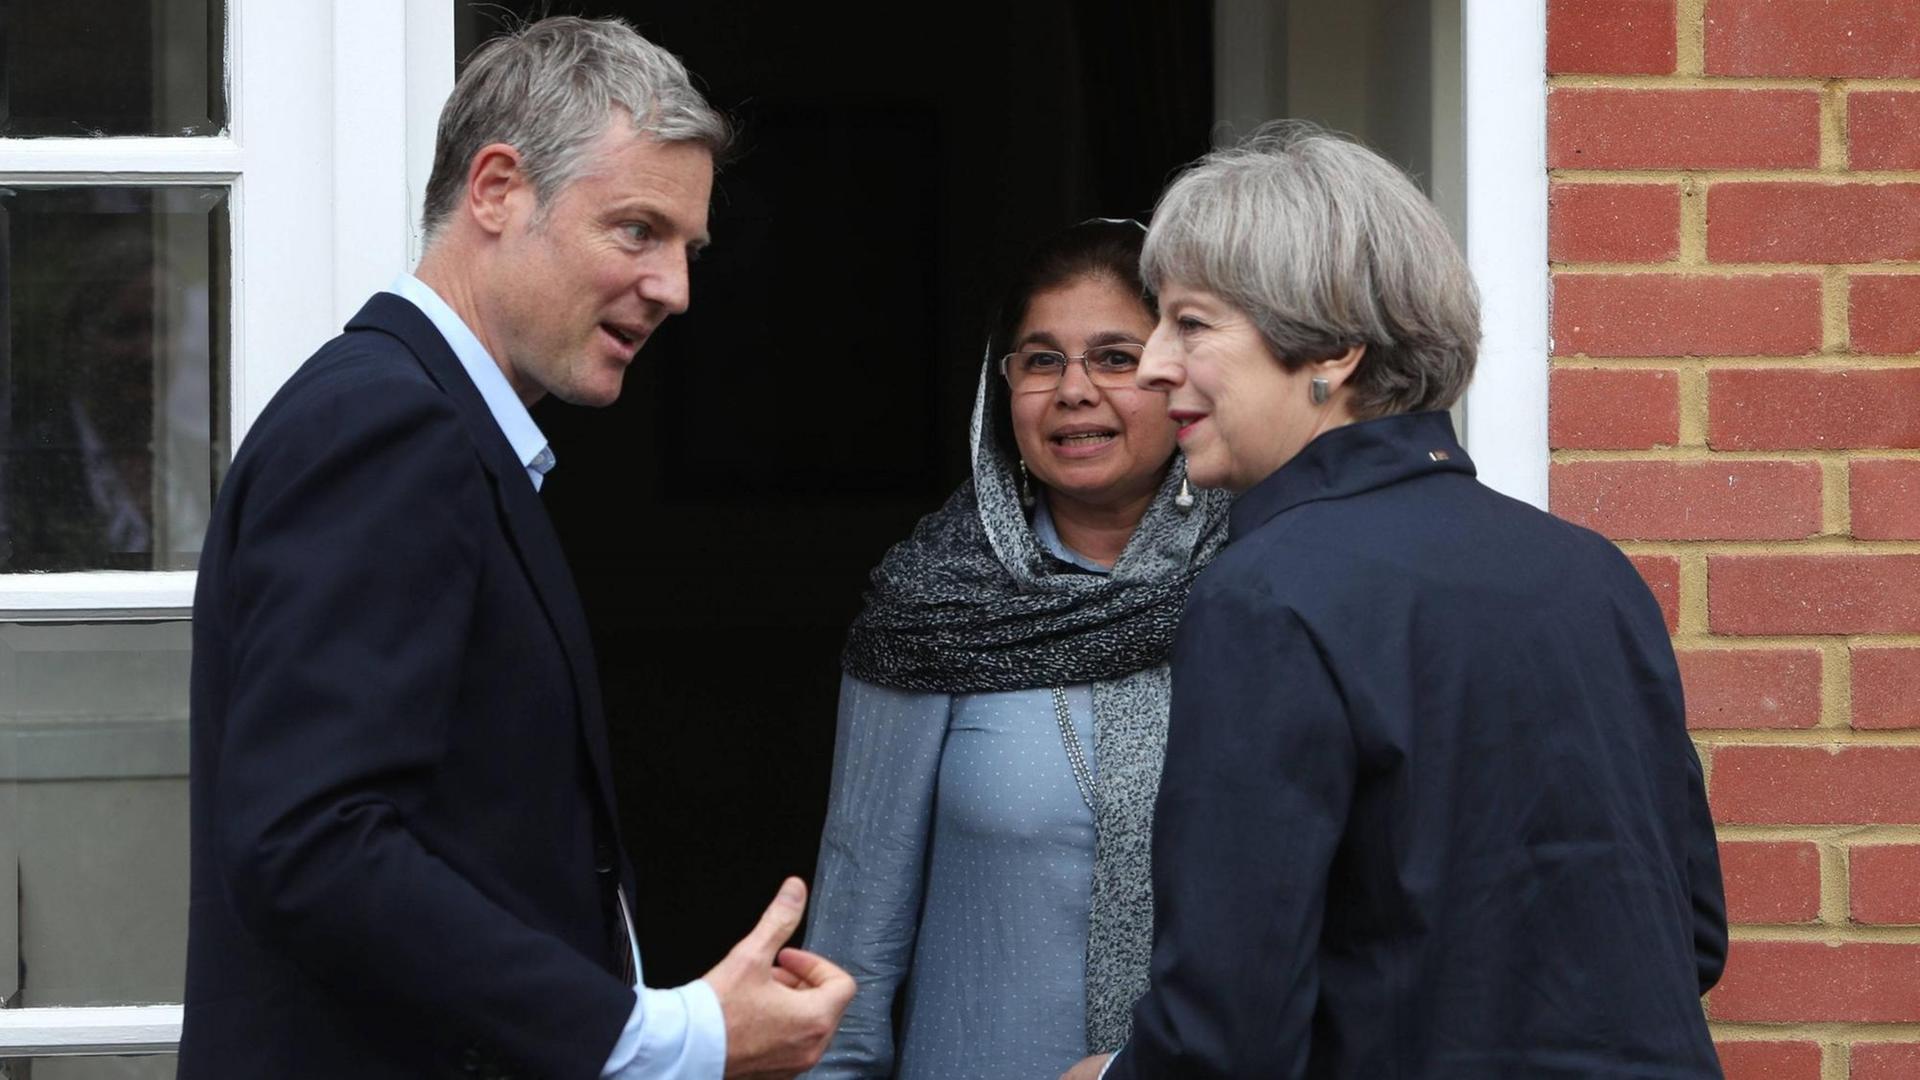 Die britische Premierministerin Theresa May und der Abgeordnete der Tories, Zac Goldsmith, im Gespräch mit einer potenziellen Wählerin in Richmond.